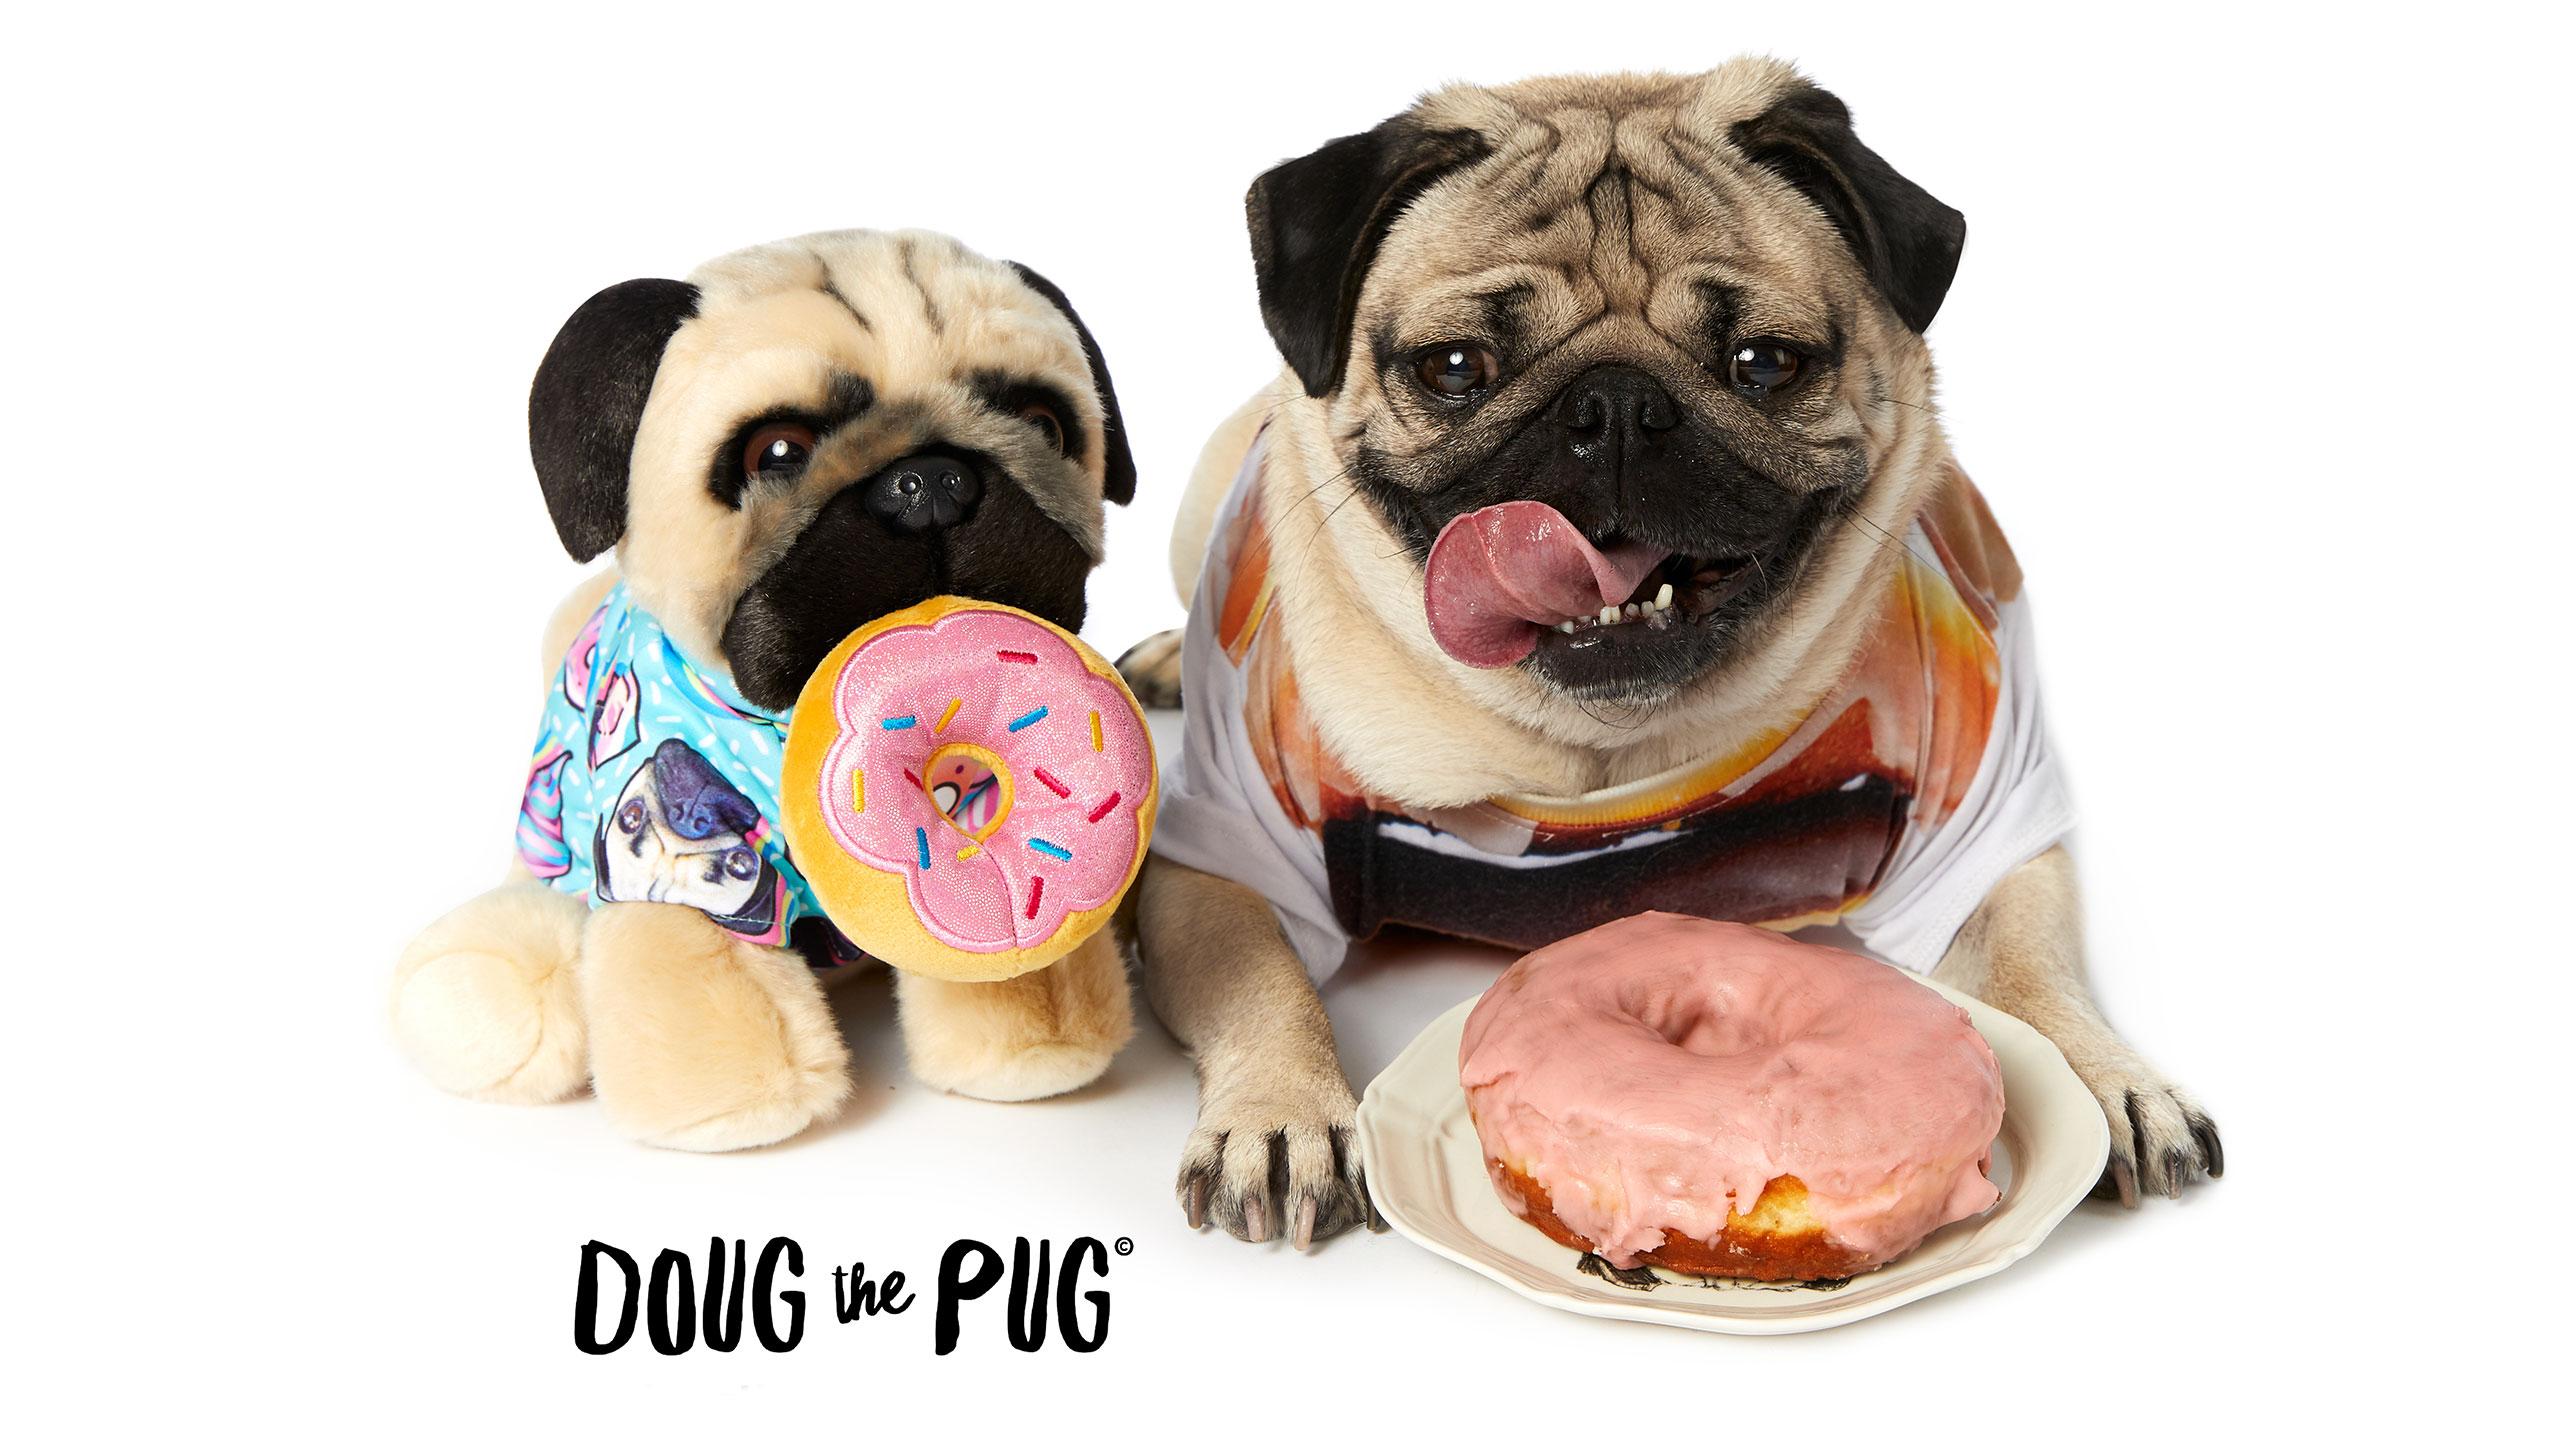 Doug The Pug™